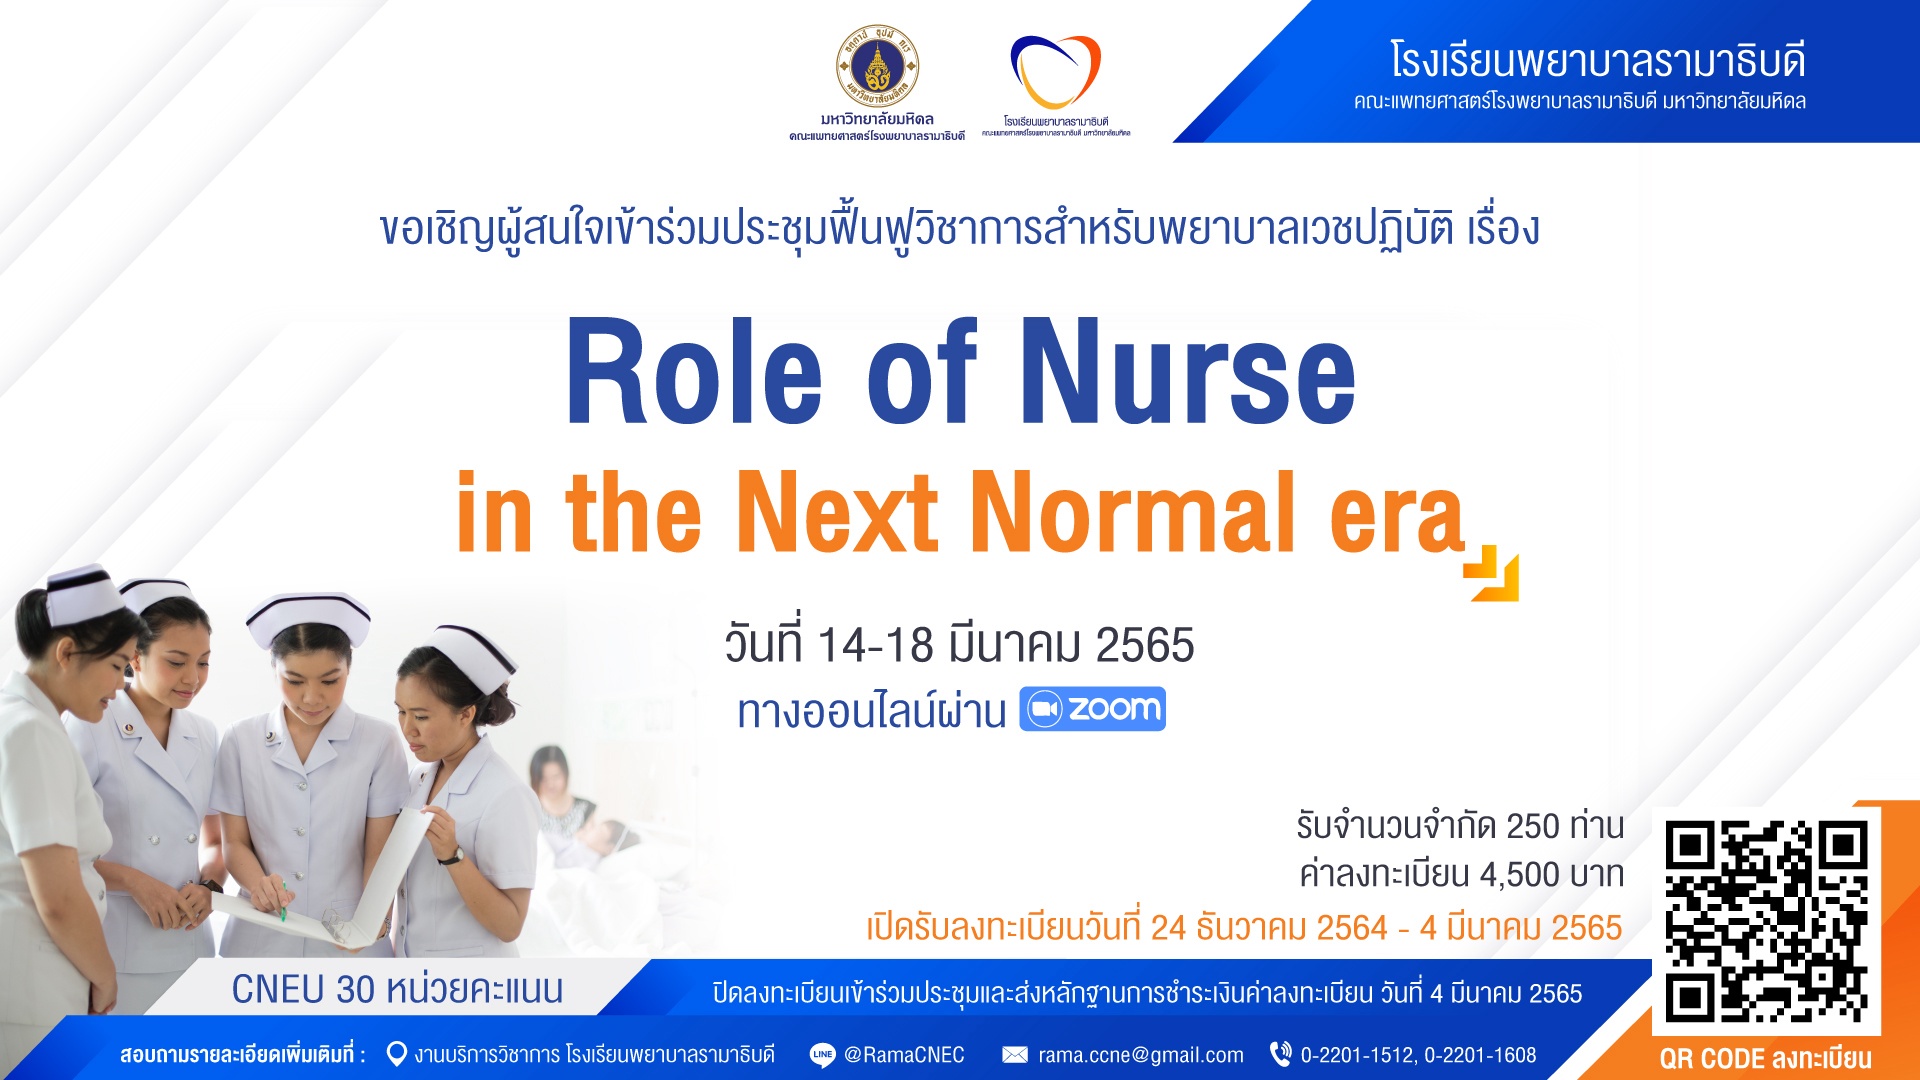 ขอเชิญเข้าร่วมประชุมฟื้นฟูวิชาการสำหรับพยาบาลเวชปฏิบัติ เรื่อง Role of Nurse in the Next Normal era